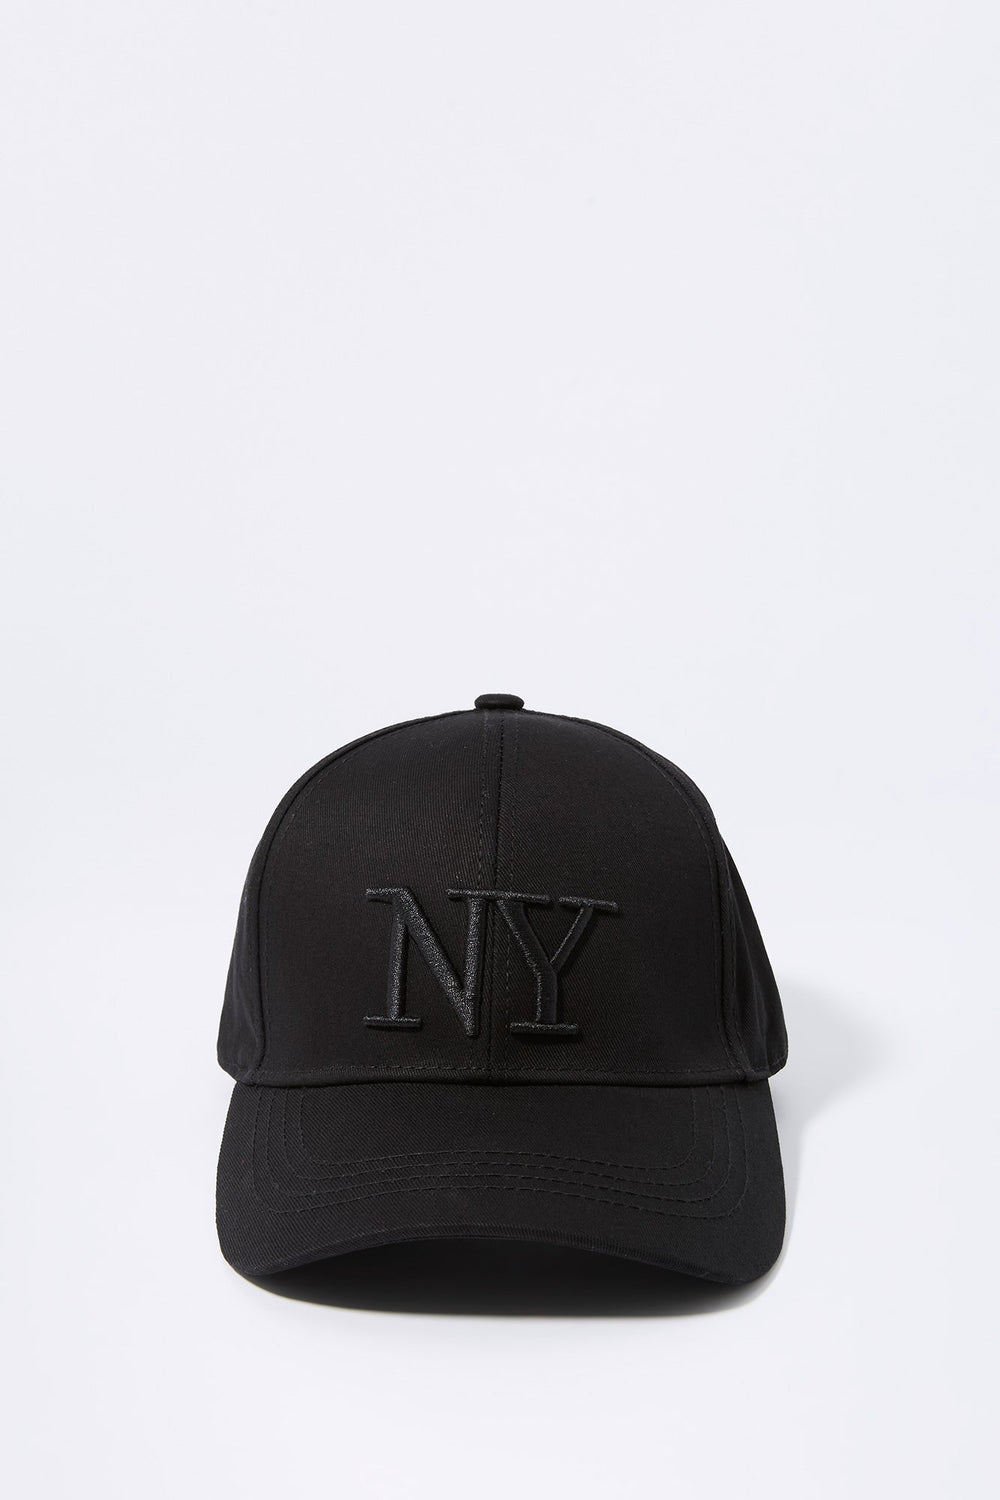 Black NY Embroidered Baseball Hat Black NY Embroidered Baseball Hat 1